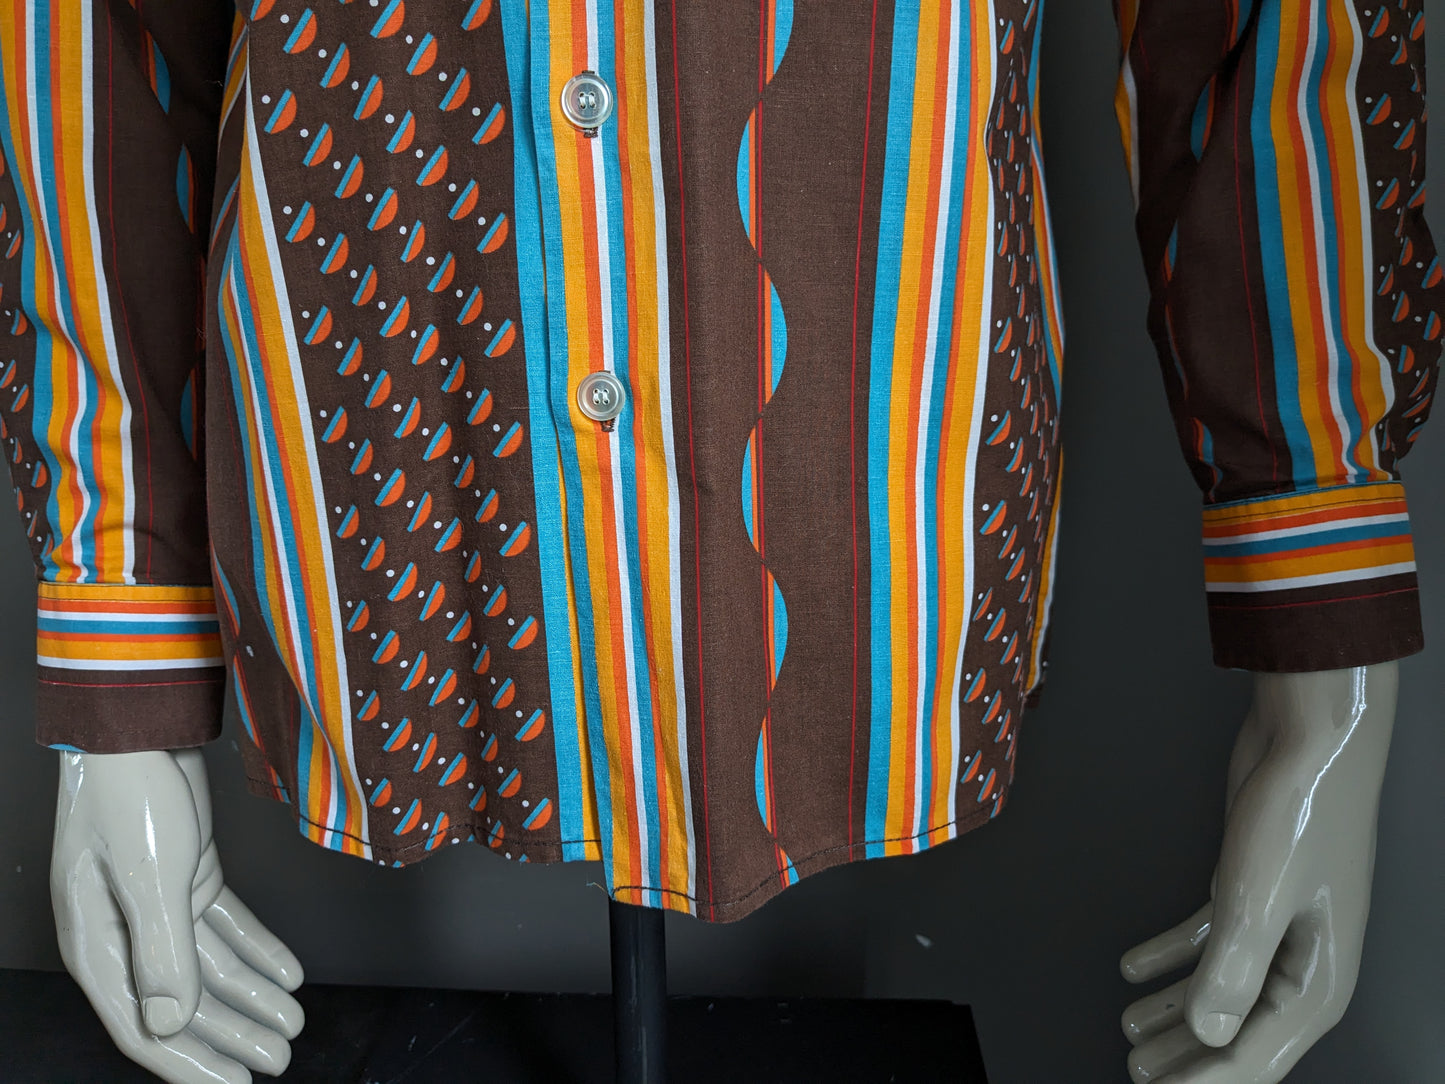 Trend vintage Shirt degli anni '70 con colletto punti. Stampa blu arancione marrone. Taglia L.